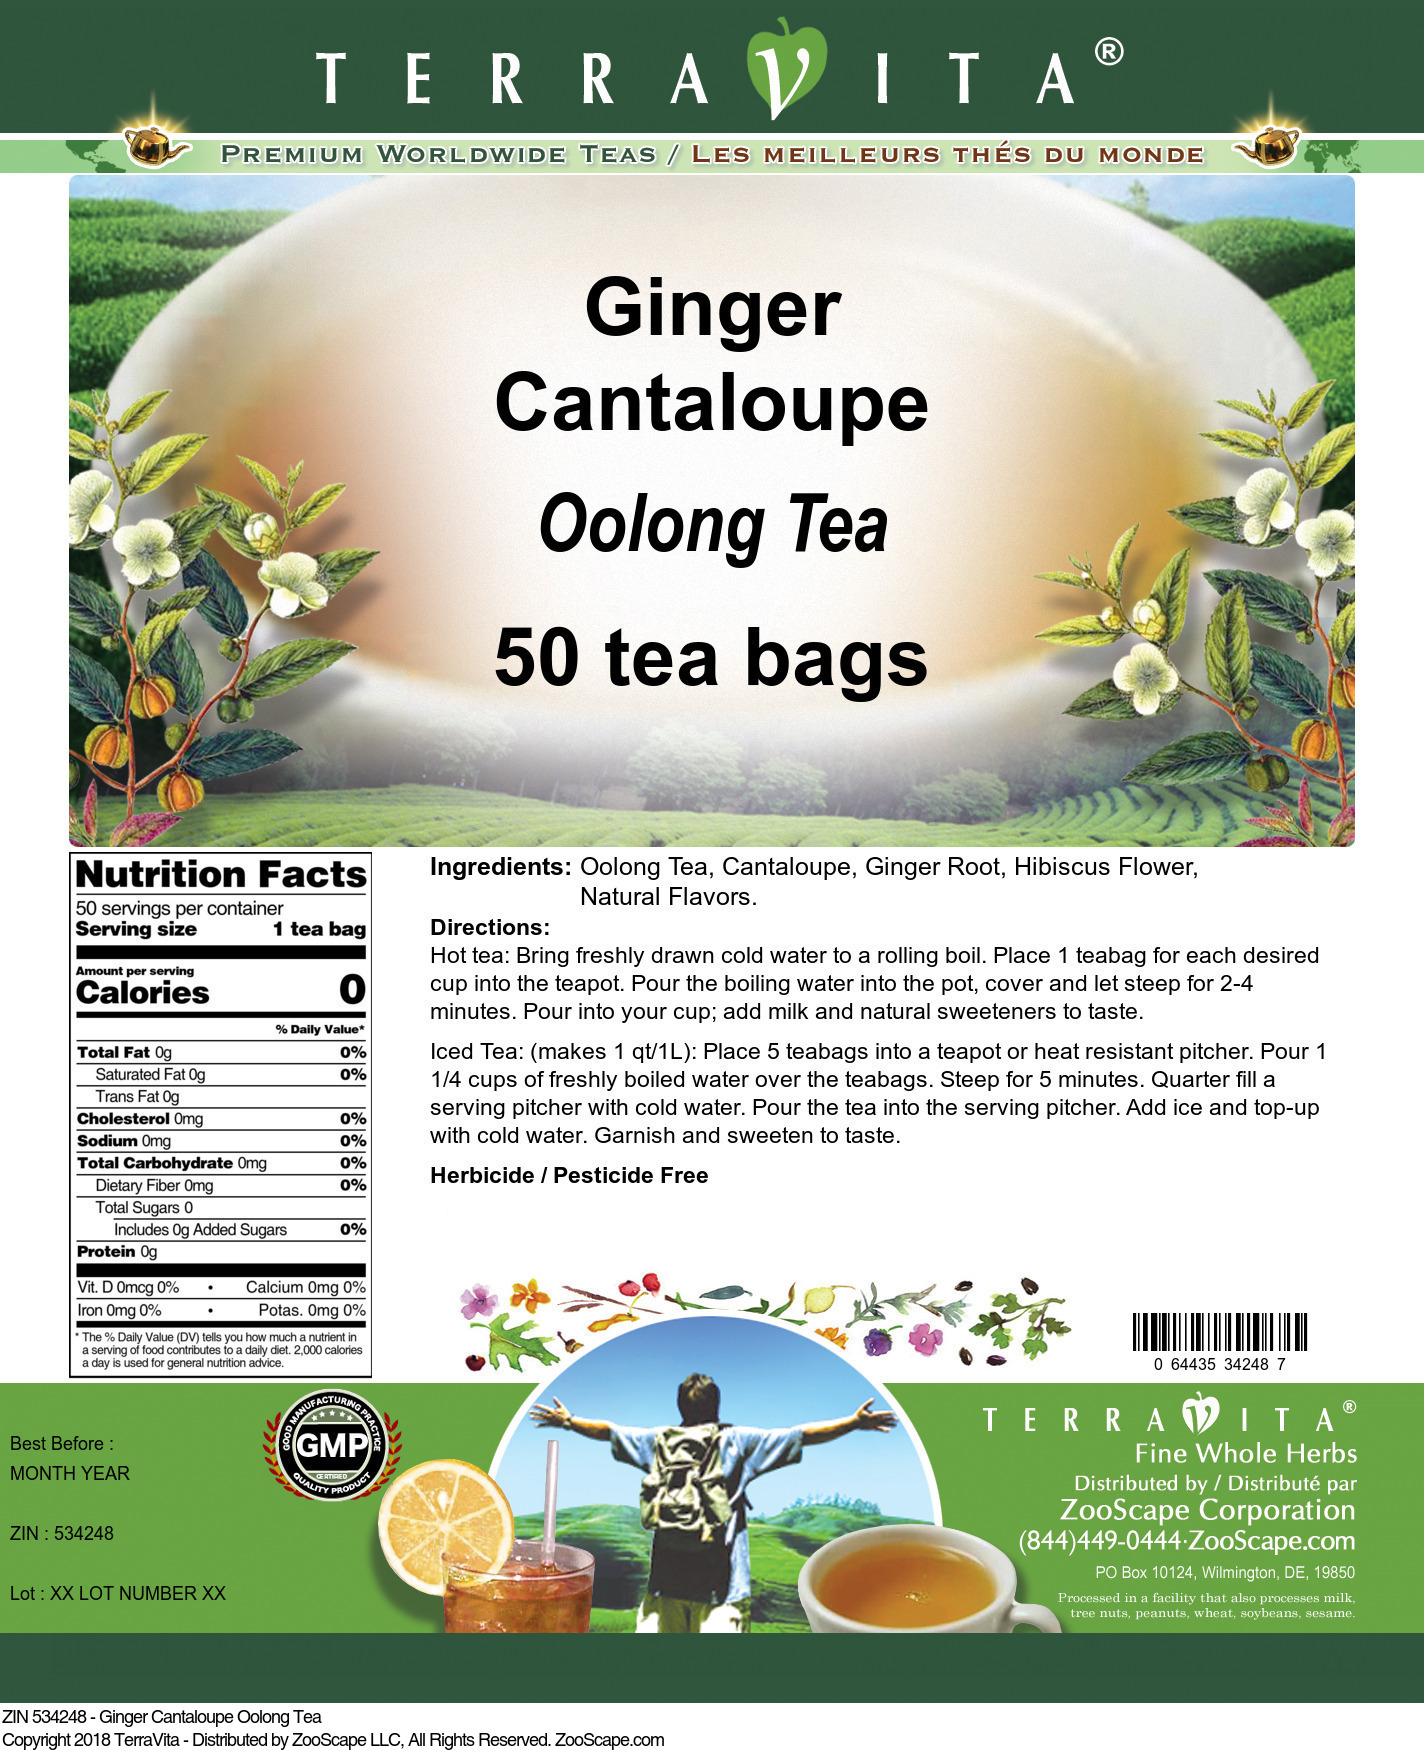 Ginger Cantaloupe Oolong Tea - Label